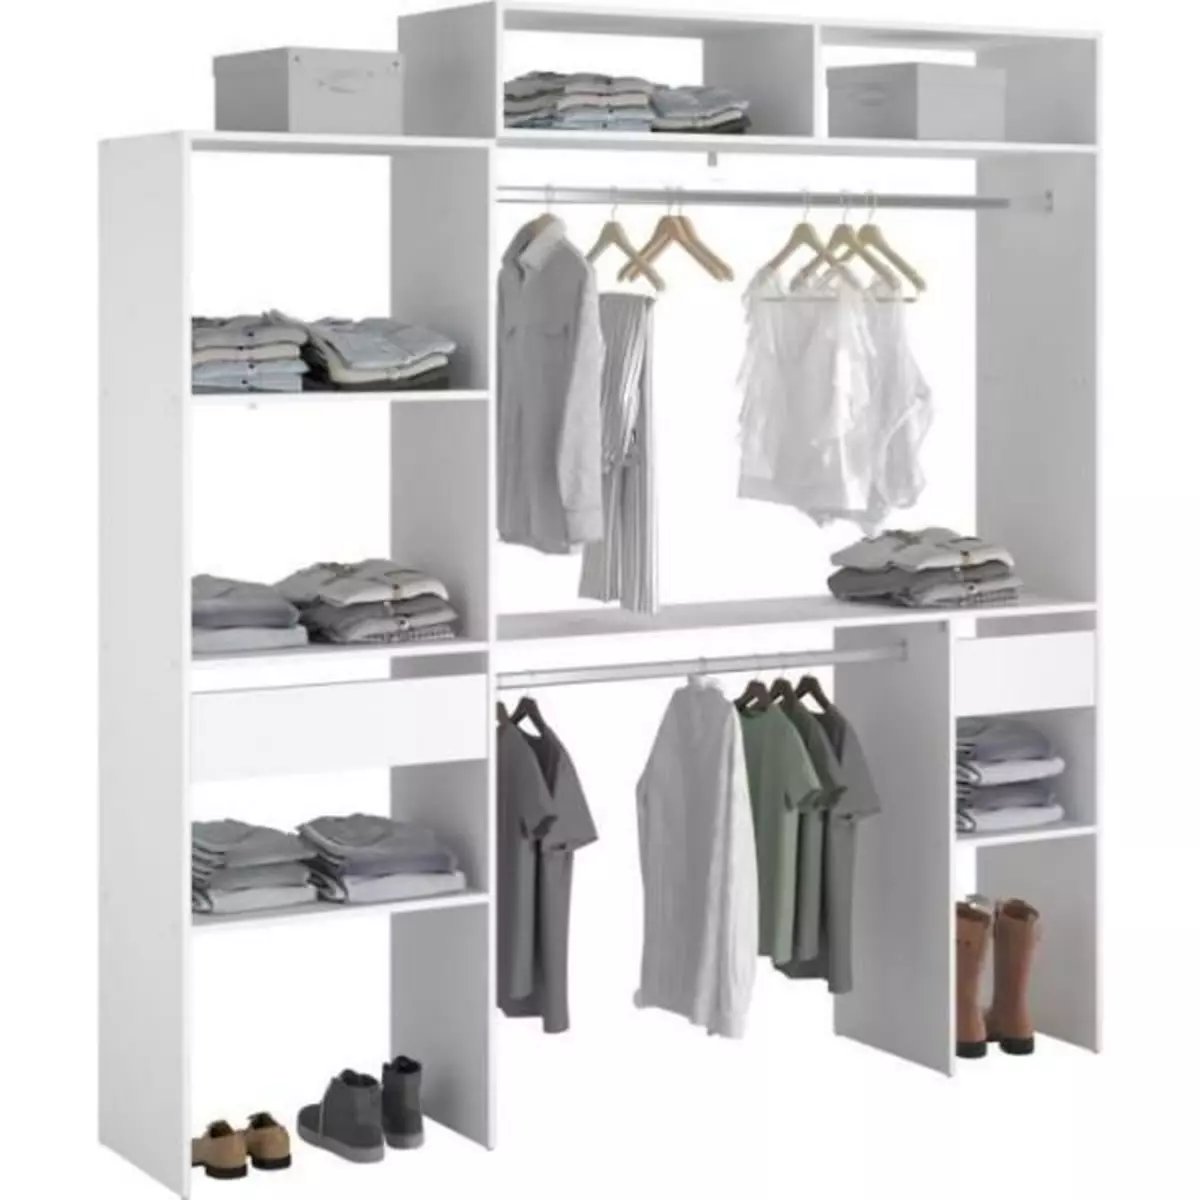 MARKET24 Dressing Kit dressing extensible ARTIC EKIPA - Décor mélaminé blanc - 2 penderies + 2 tiroirs + 1 surmeuble - L198 x P40 x H202 cm